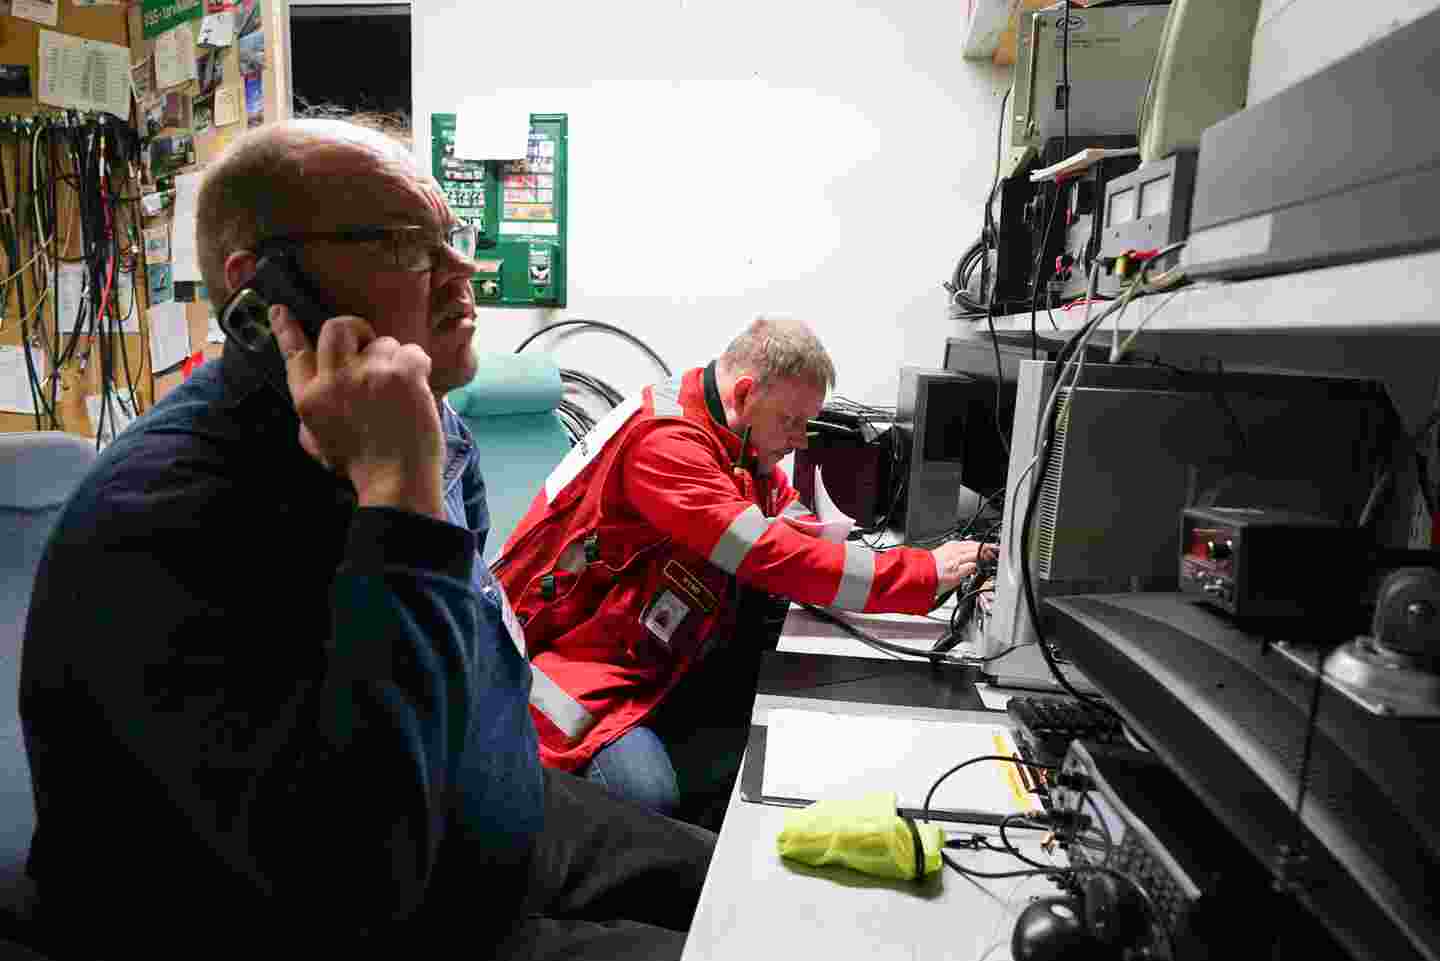 Punaisen Ristin ja Vapaaehtoisen pelastuspalvelun vapaaehtoiset teknisessä tilassa laitteiden keskellä. Toinen vapaaehtoisista puhuu puhelimeen.